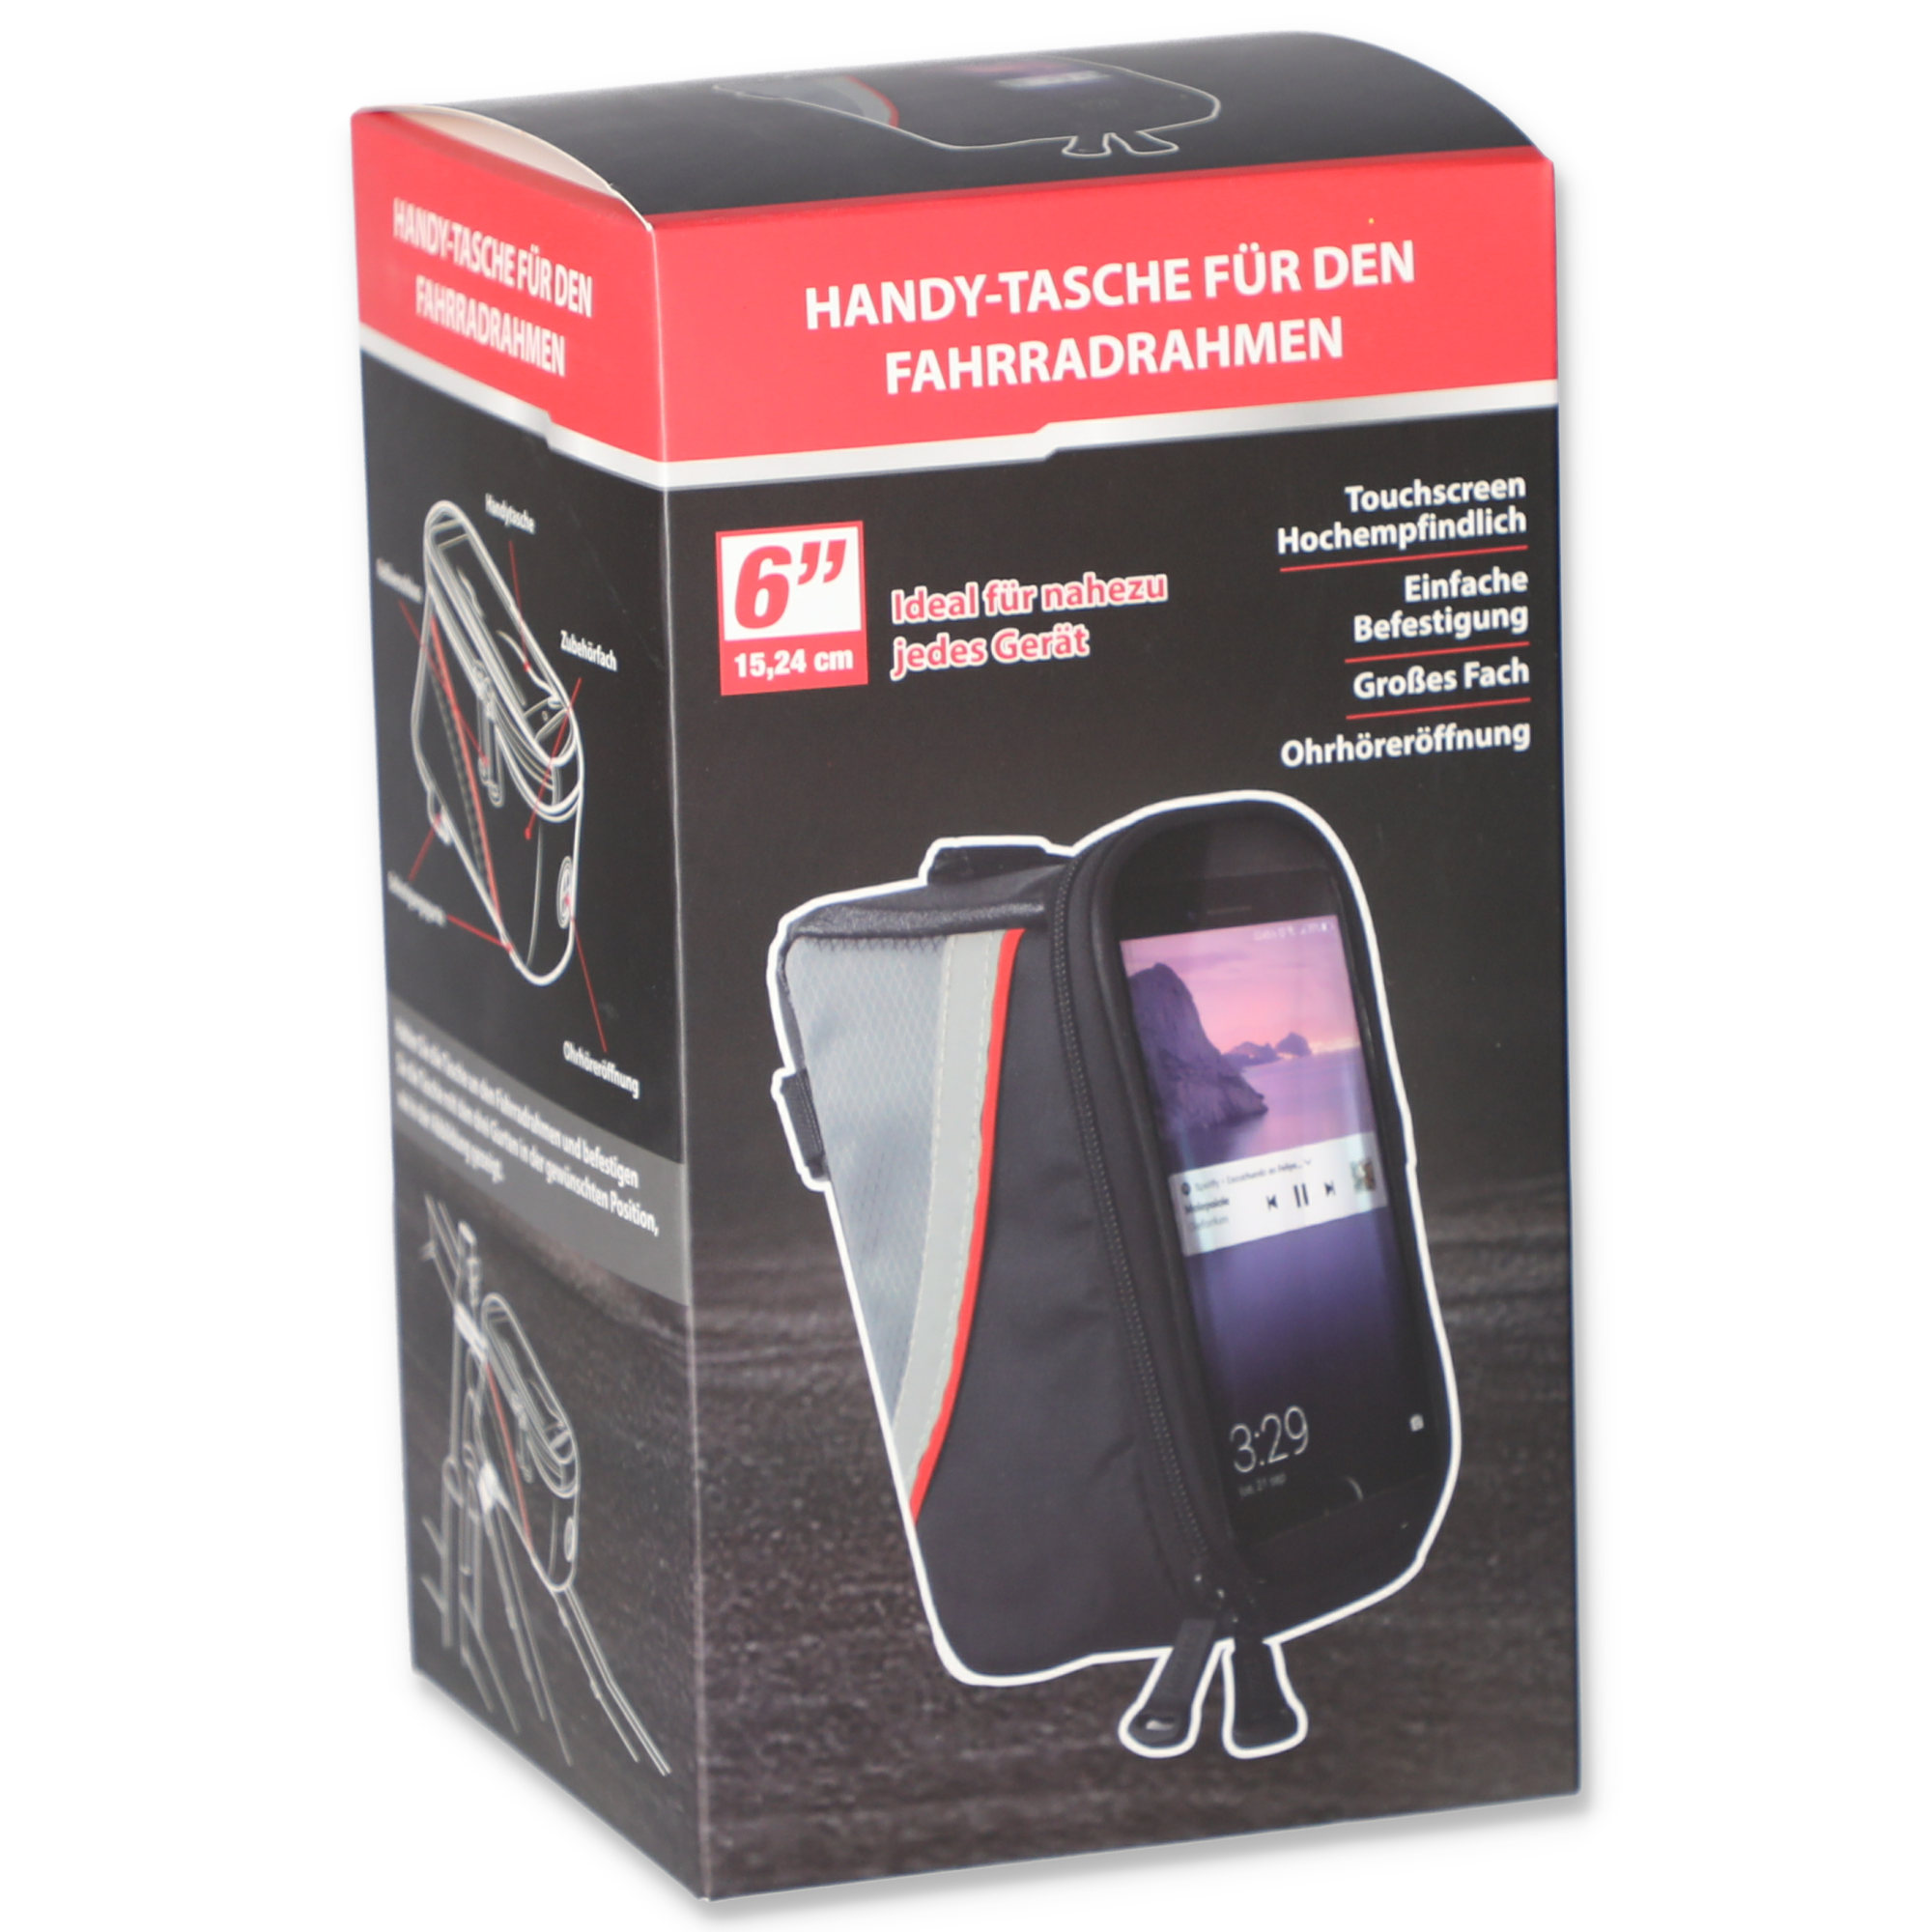 Handy-Fahrradtasche mit Touchscreen schwarz 15 cm + product picture